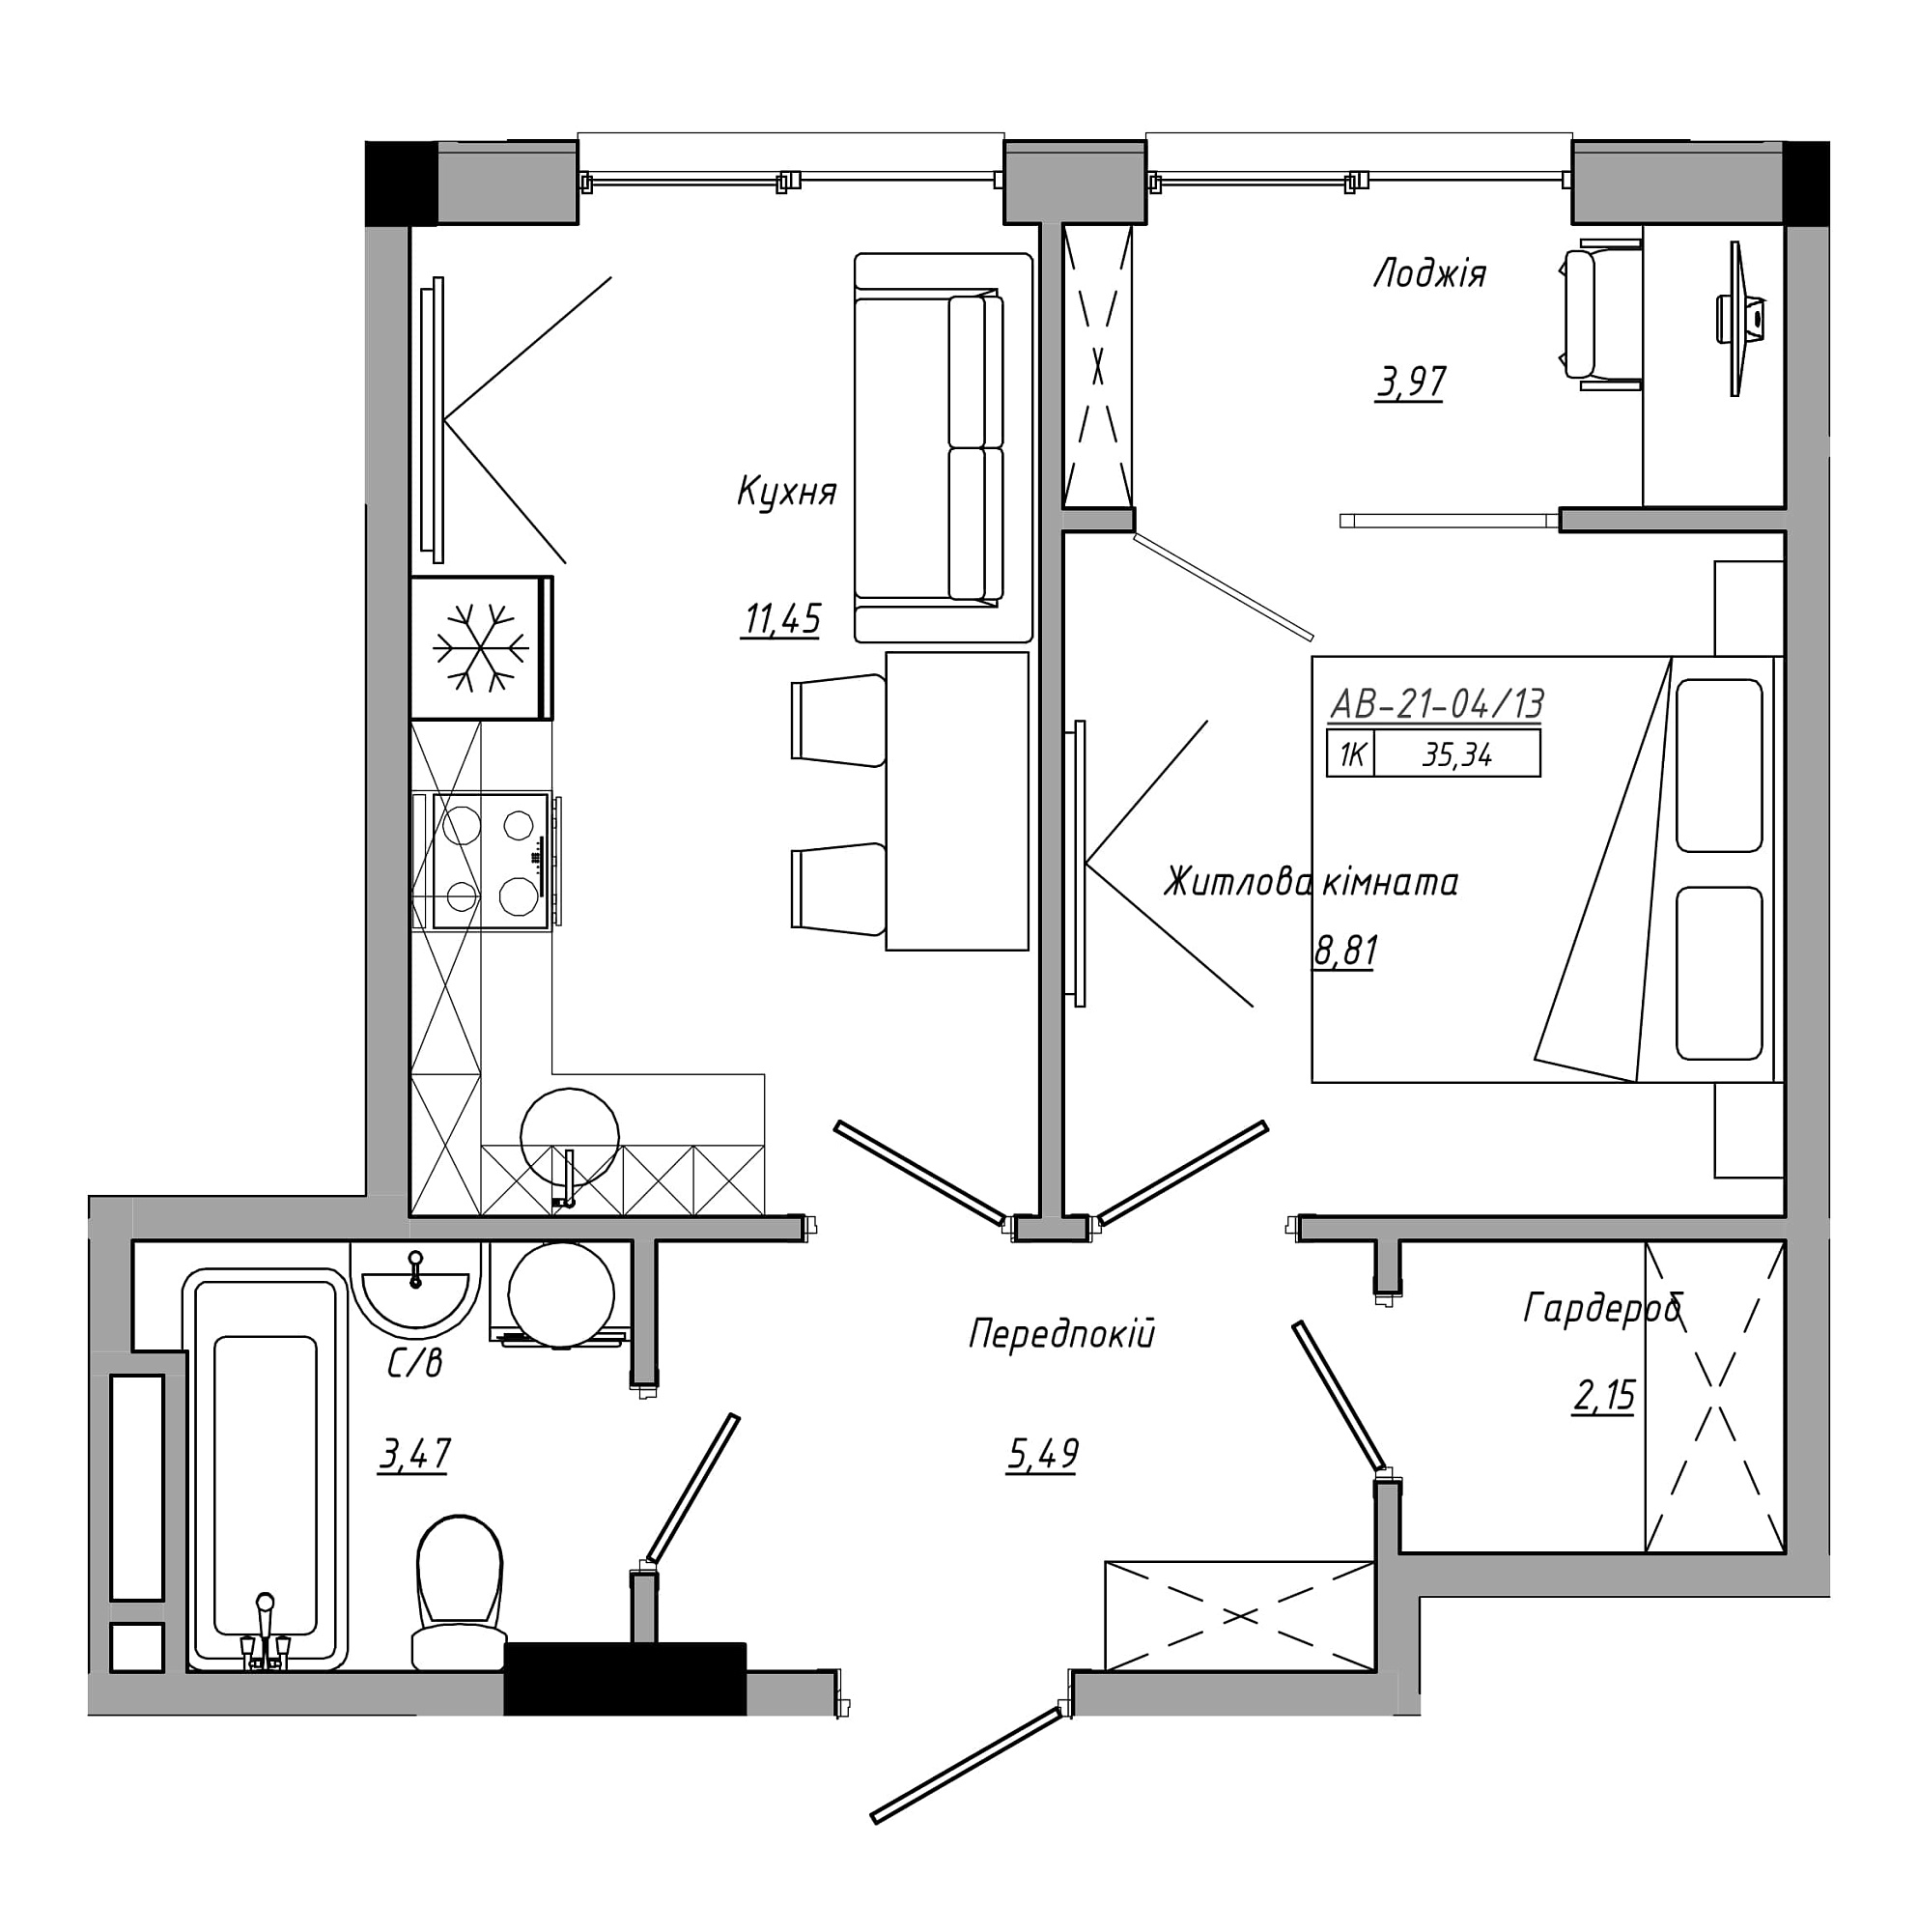 Планування 1-к квартира площею 35.34м2, AB-21-04/00013.